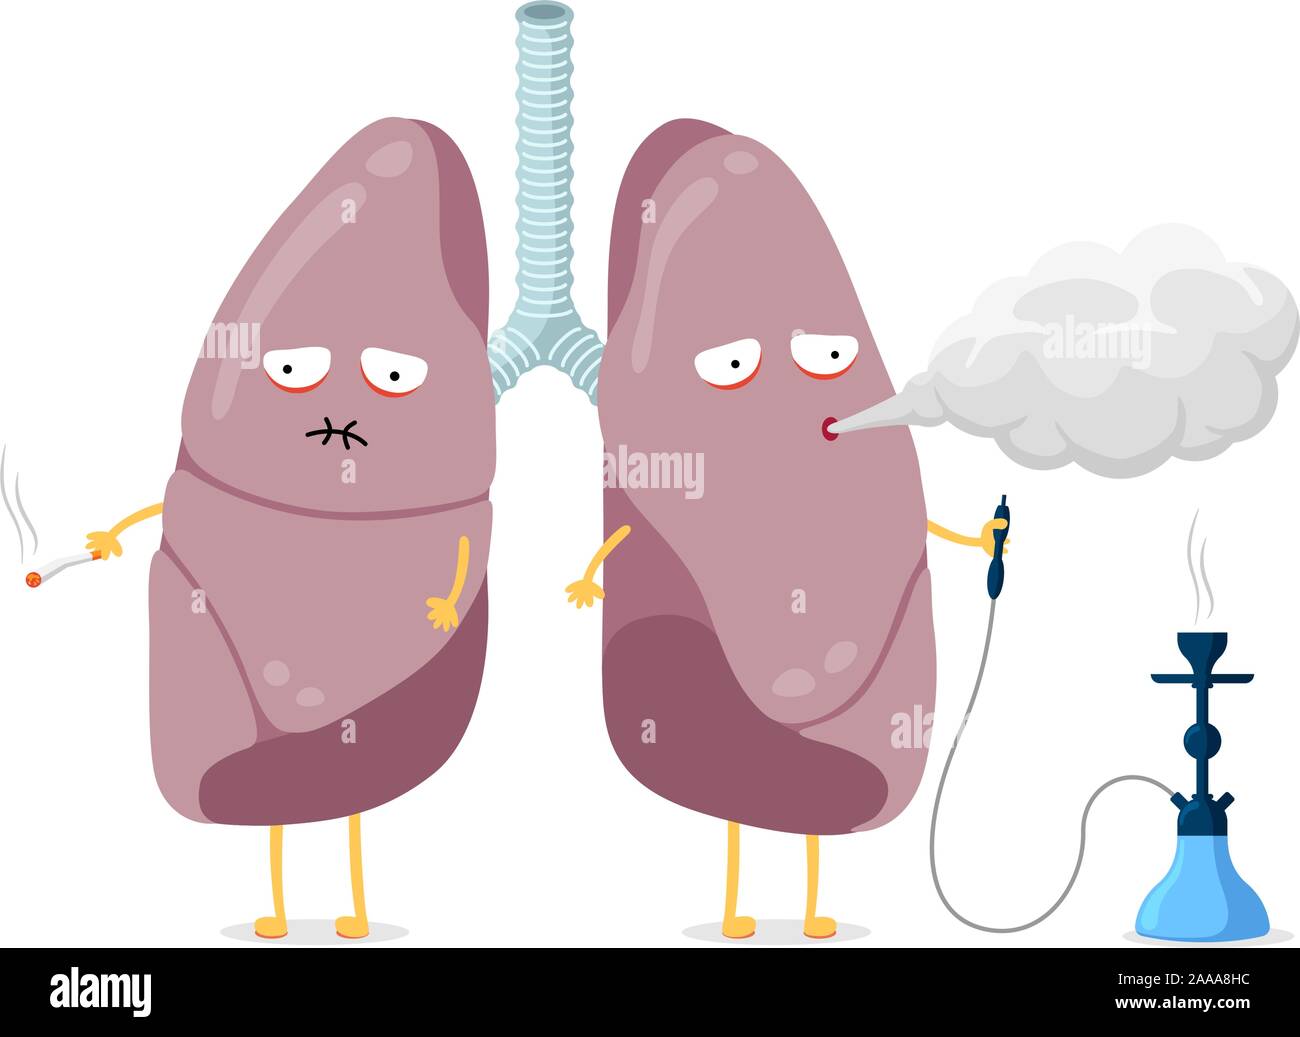 Ungesunde kranke Lungen Cartoon-Figur Rauchen Zigarette und Shisha. Das innere Organ des menschlichen Atmungssystems bläst Rauch und hat eine schlechte Gesundheit. Schlechte gefährliche Gewohnheit sucht Vektor-Illustration Stock Vektor